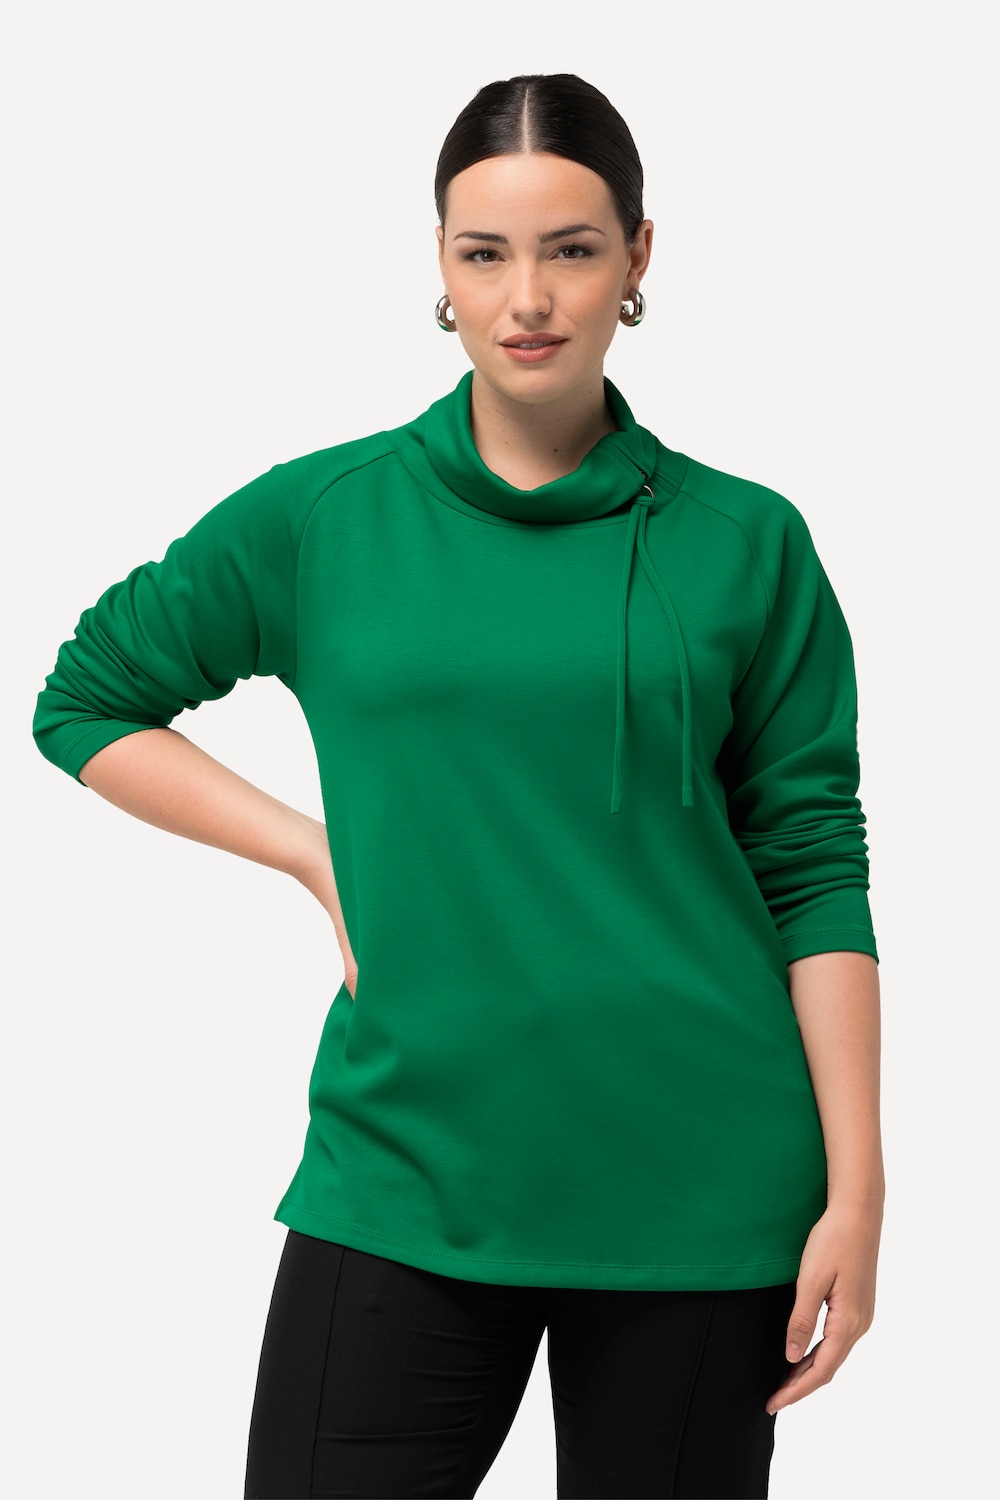 Grote Maten Sweatshirt, Dames, groen, Maat: 46/48, Synthetische vezels/Polyester, Ulla Popken